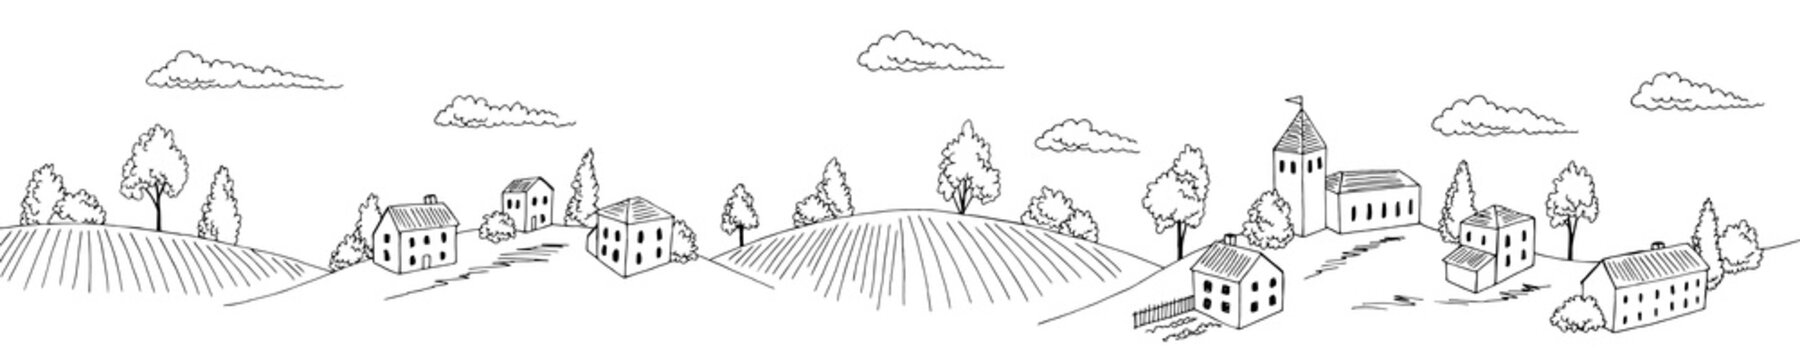 Village hill long graphic black white rural landscape sketch illustration vector